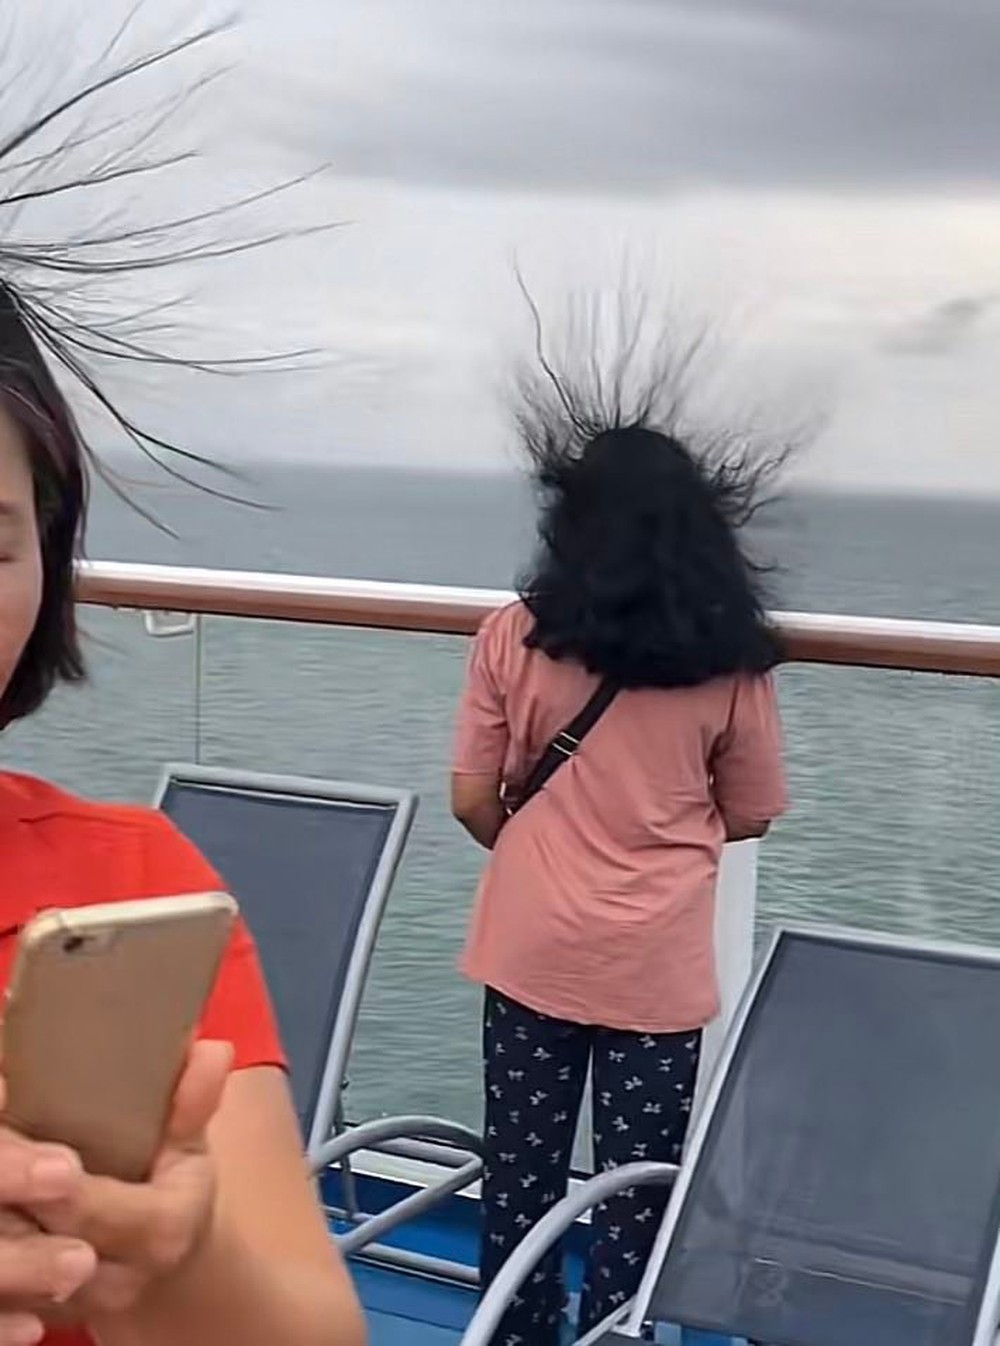 Du khách thích thú vì hiện tượng tóc dựng đứng khi đang ngắm biển, thực chất nguy hiểm đang rình rập! - Ảnh 1.